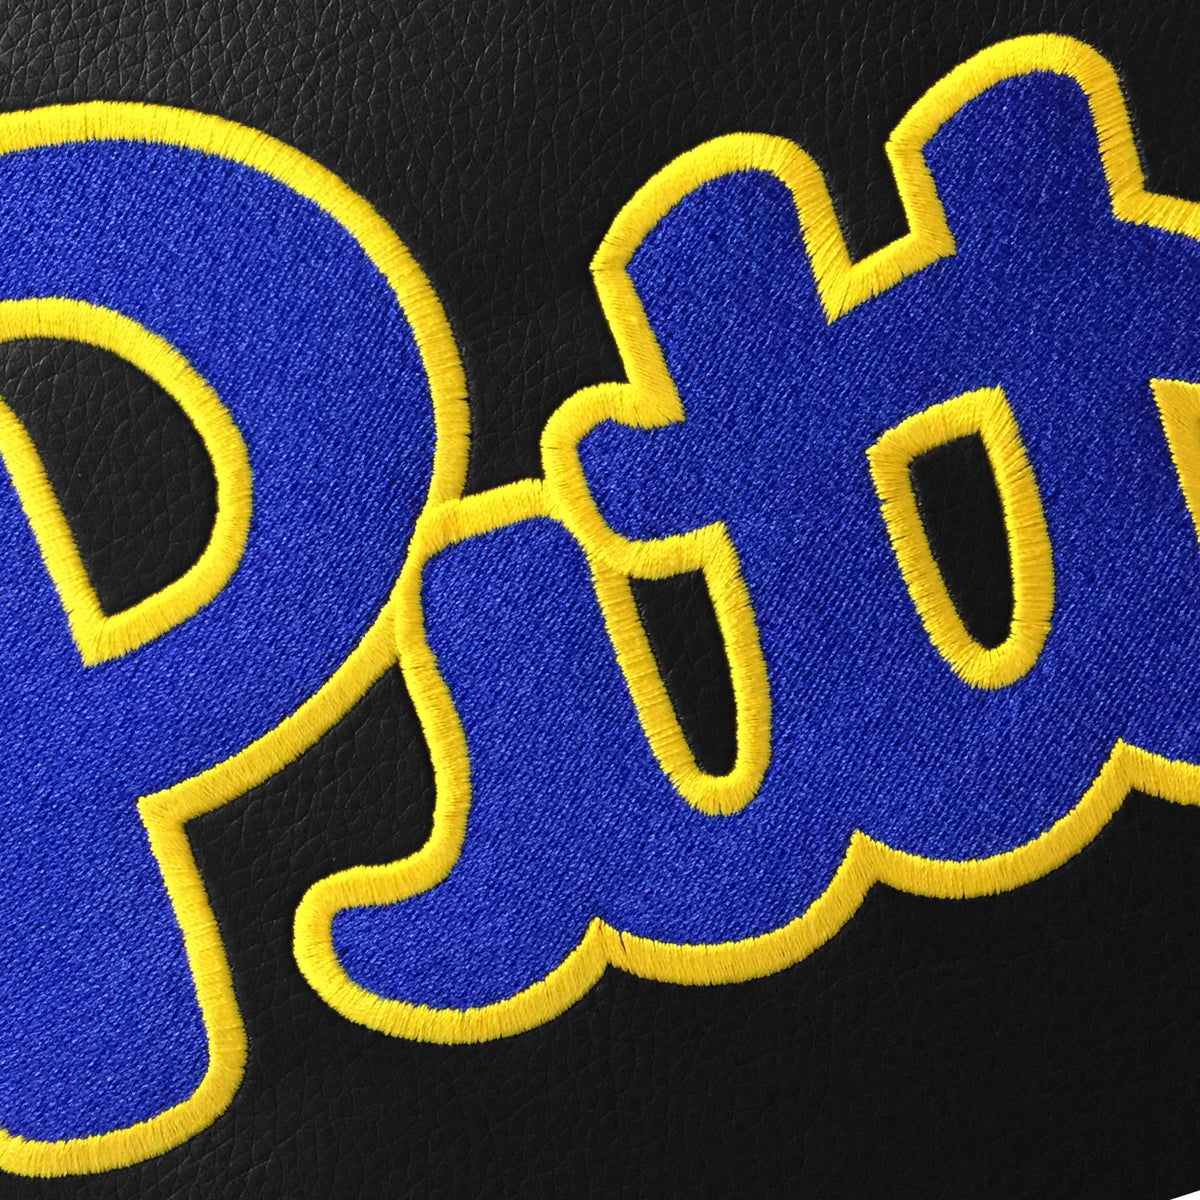 Pittsburgh Panthers Logo Panel